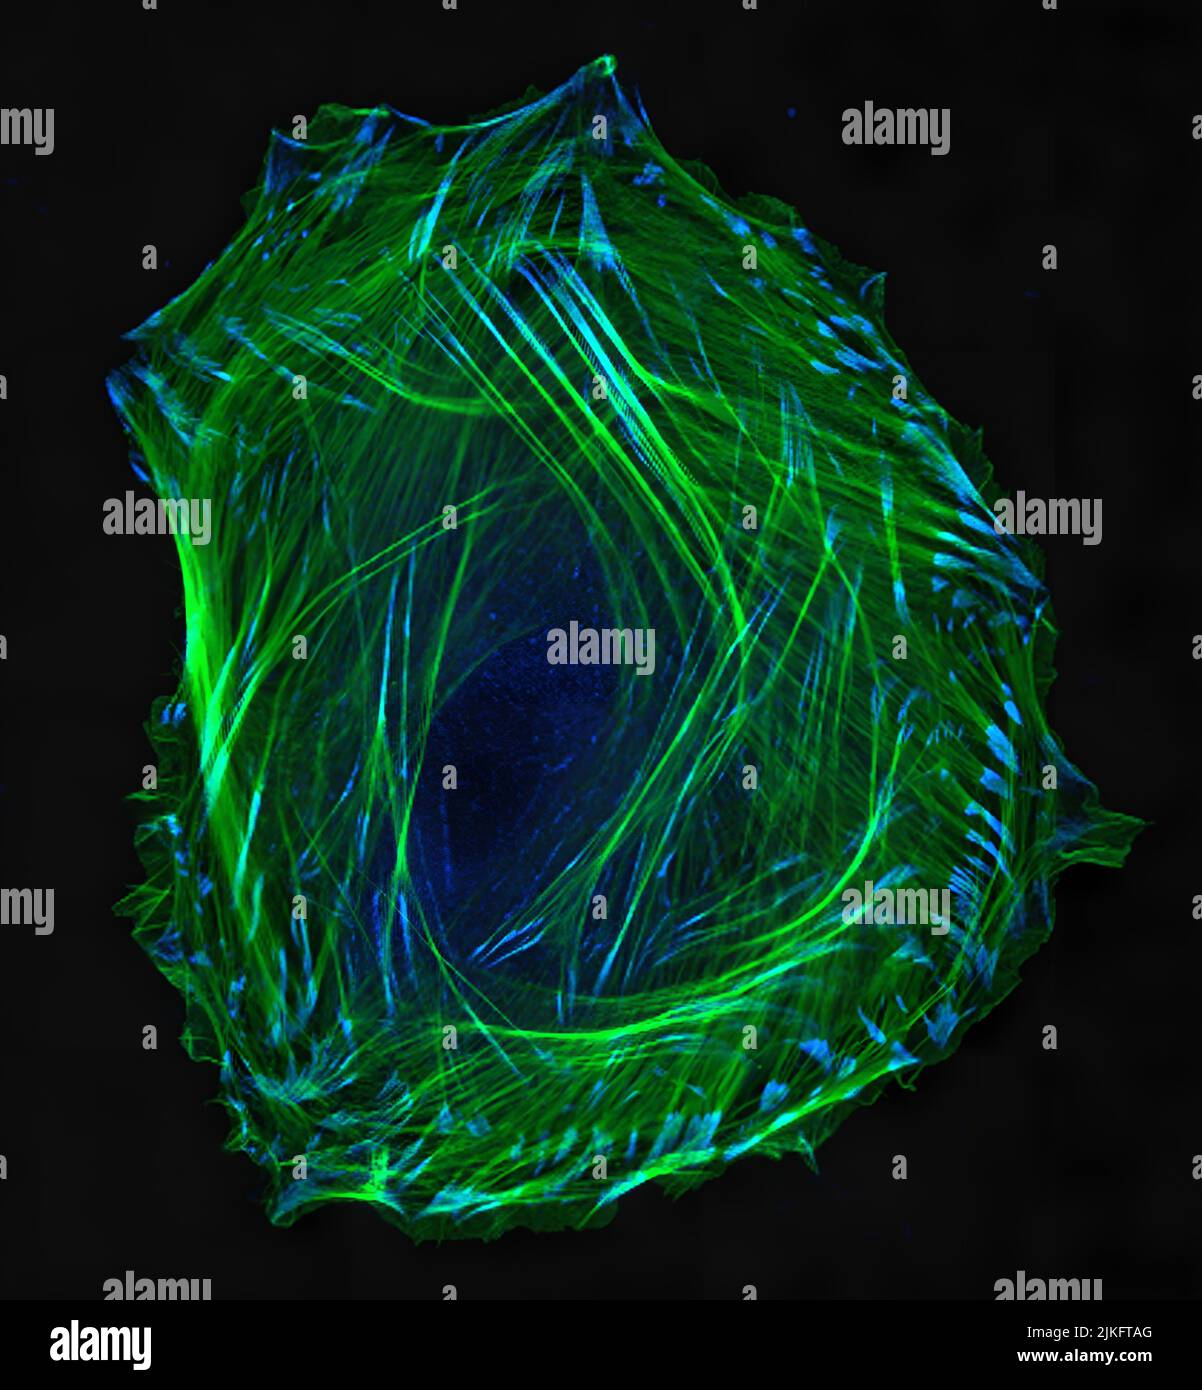 Cellule de muscle lisse embryonnaire. Cytosquelette d'actine (vert) et vinculine marqués par immunofluorescence dans les adhérences cellulaires (bleu). Microscopie confocale à balayage laser. Banque D'Images